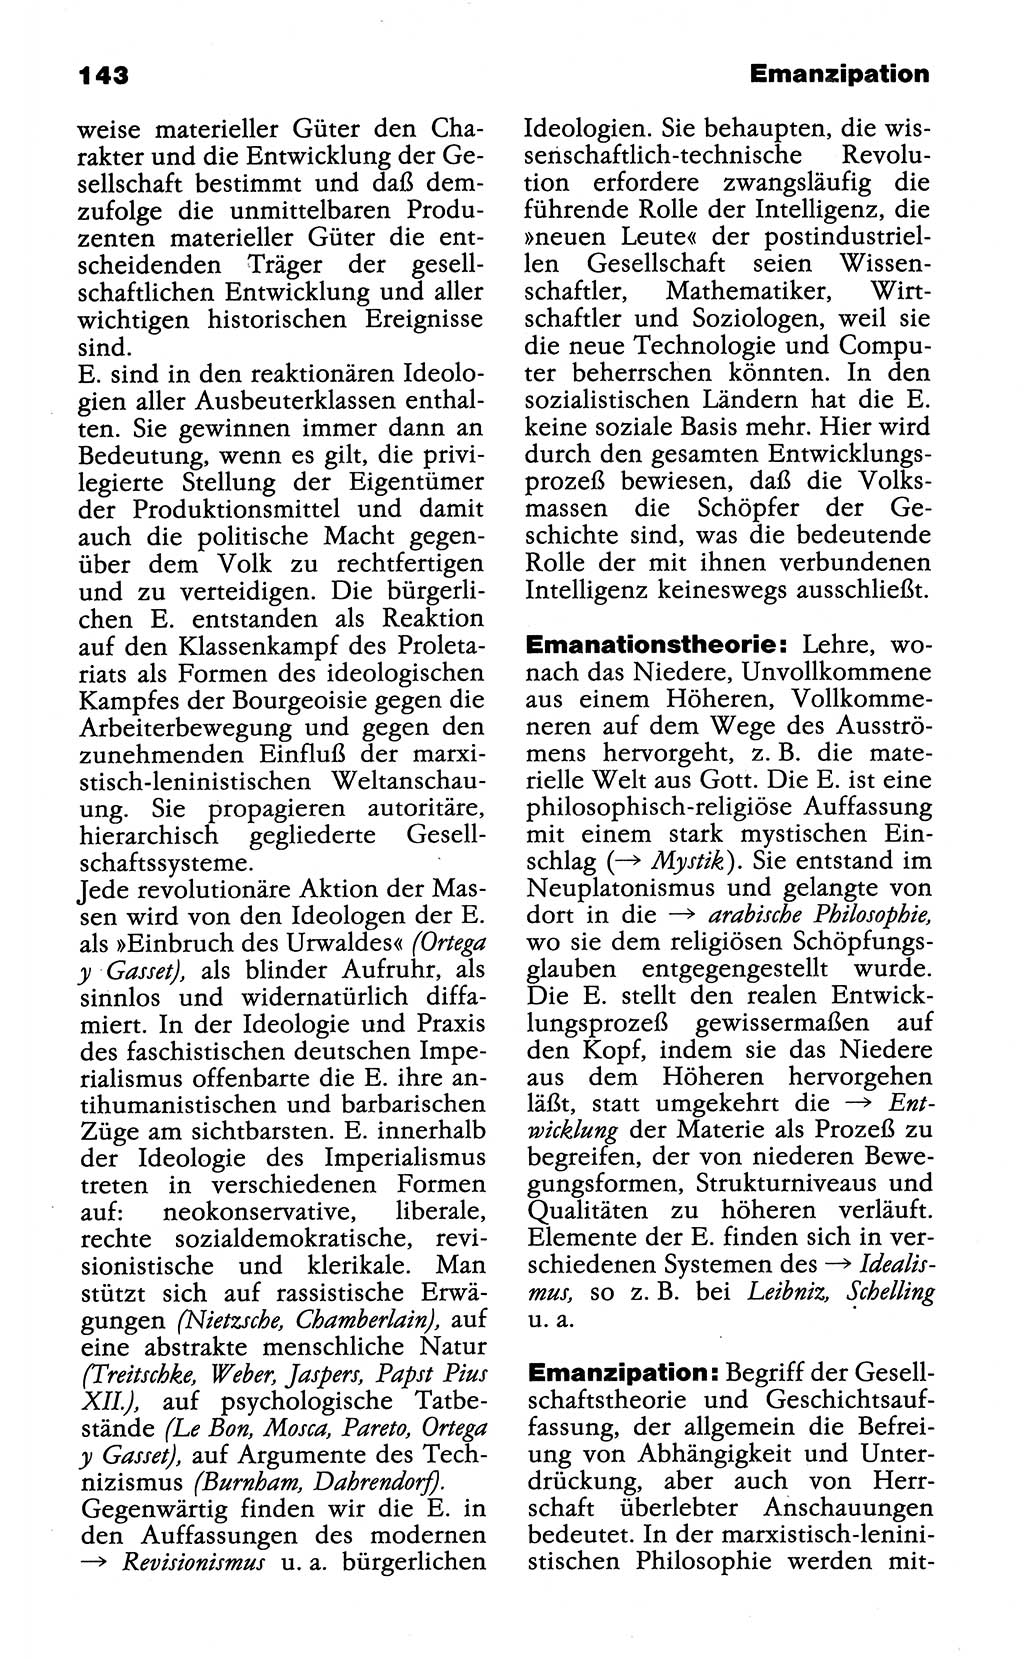 Wörterbuch der marxistisch-leninistischen Philosophie [Deutsche Demokratische Republik (DDR)] 1985, Seite 143 (Wb. ML Phil. DDR 1985, S. 143)